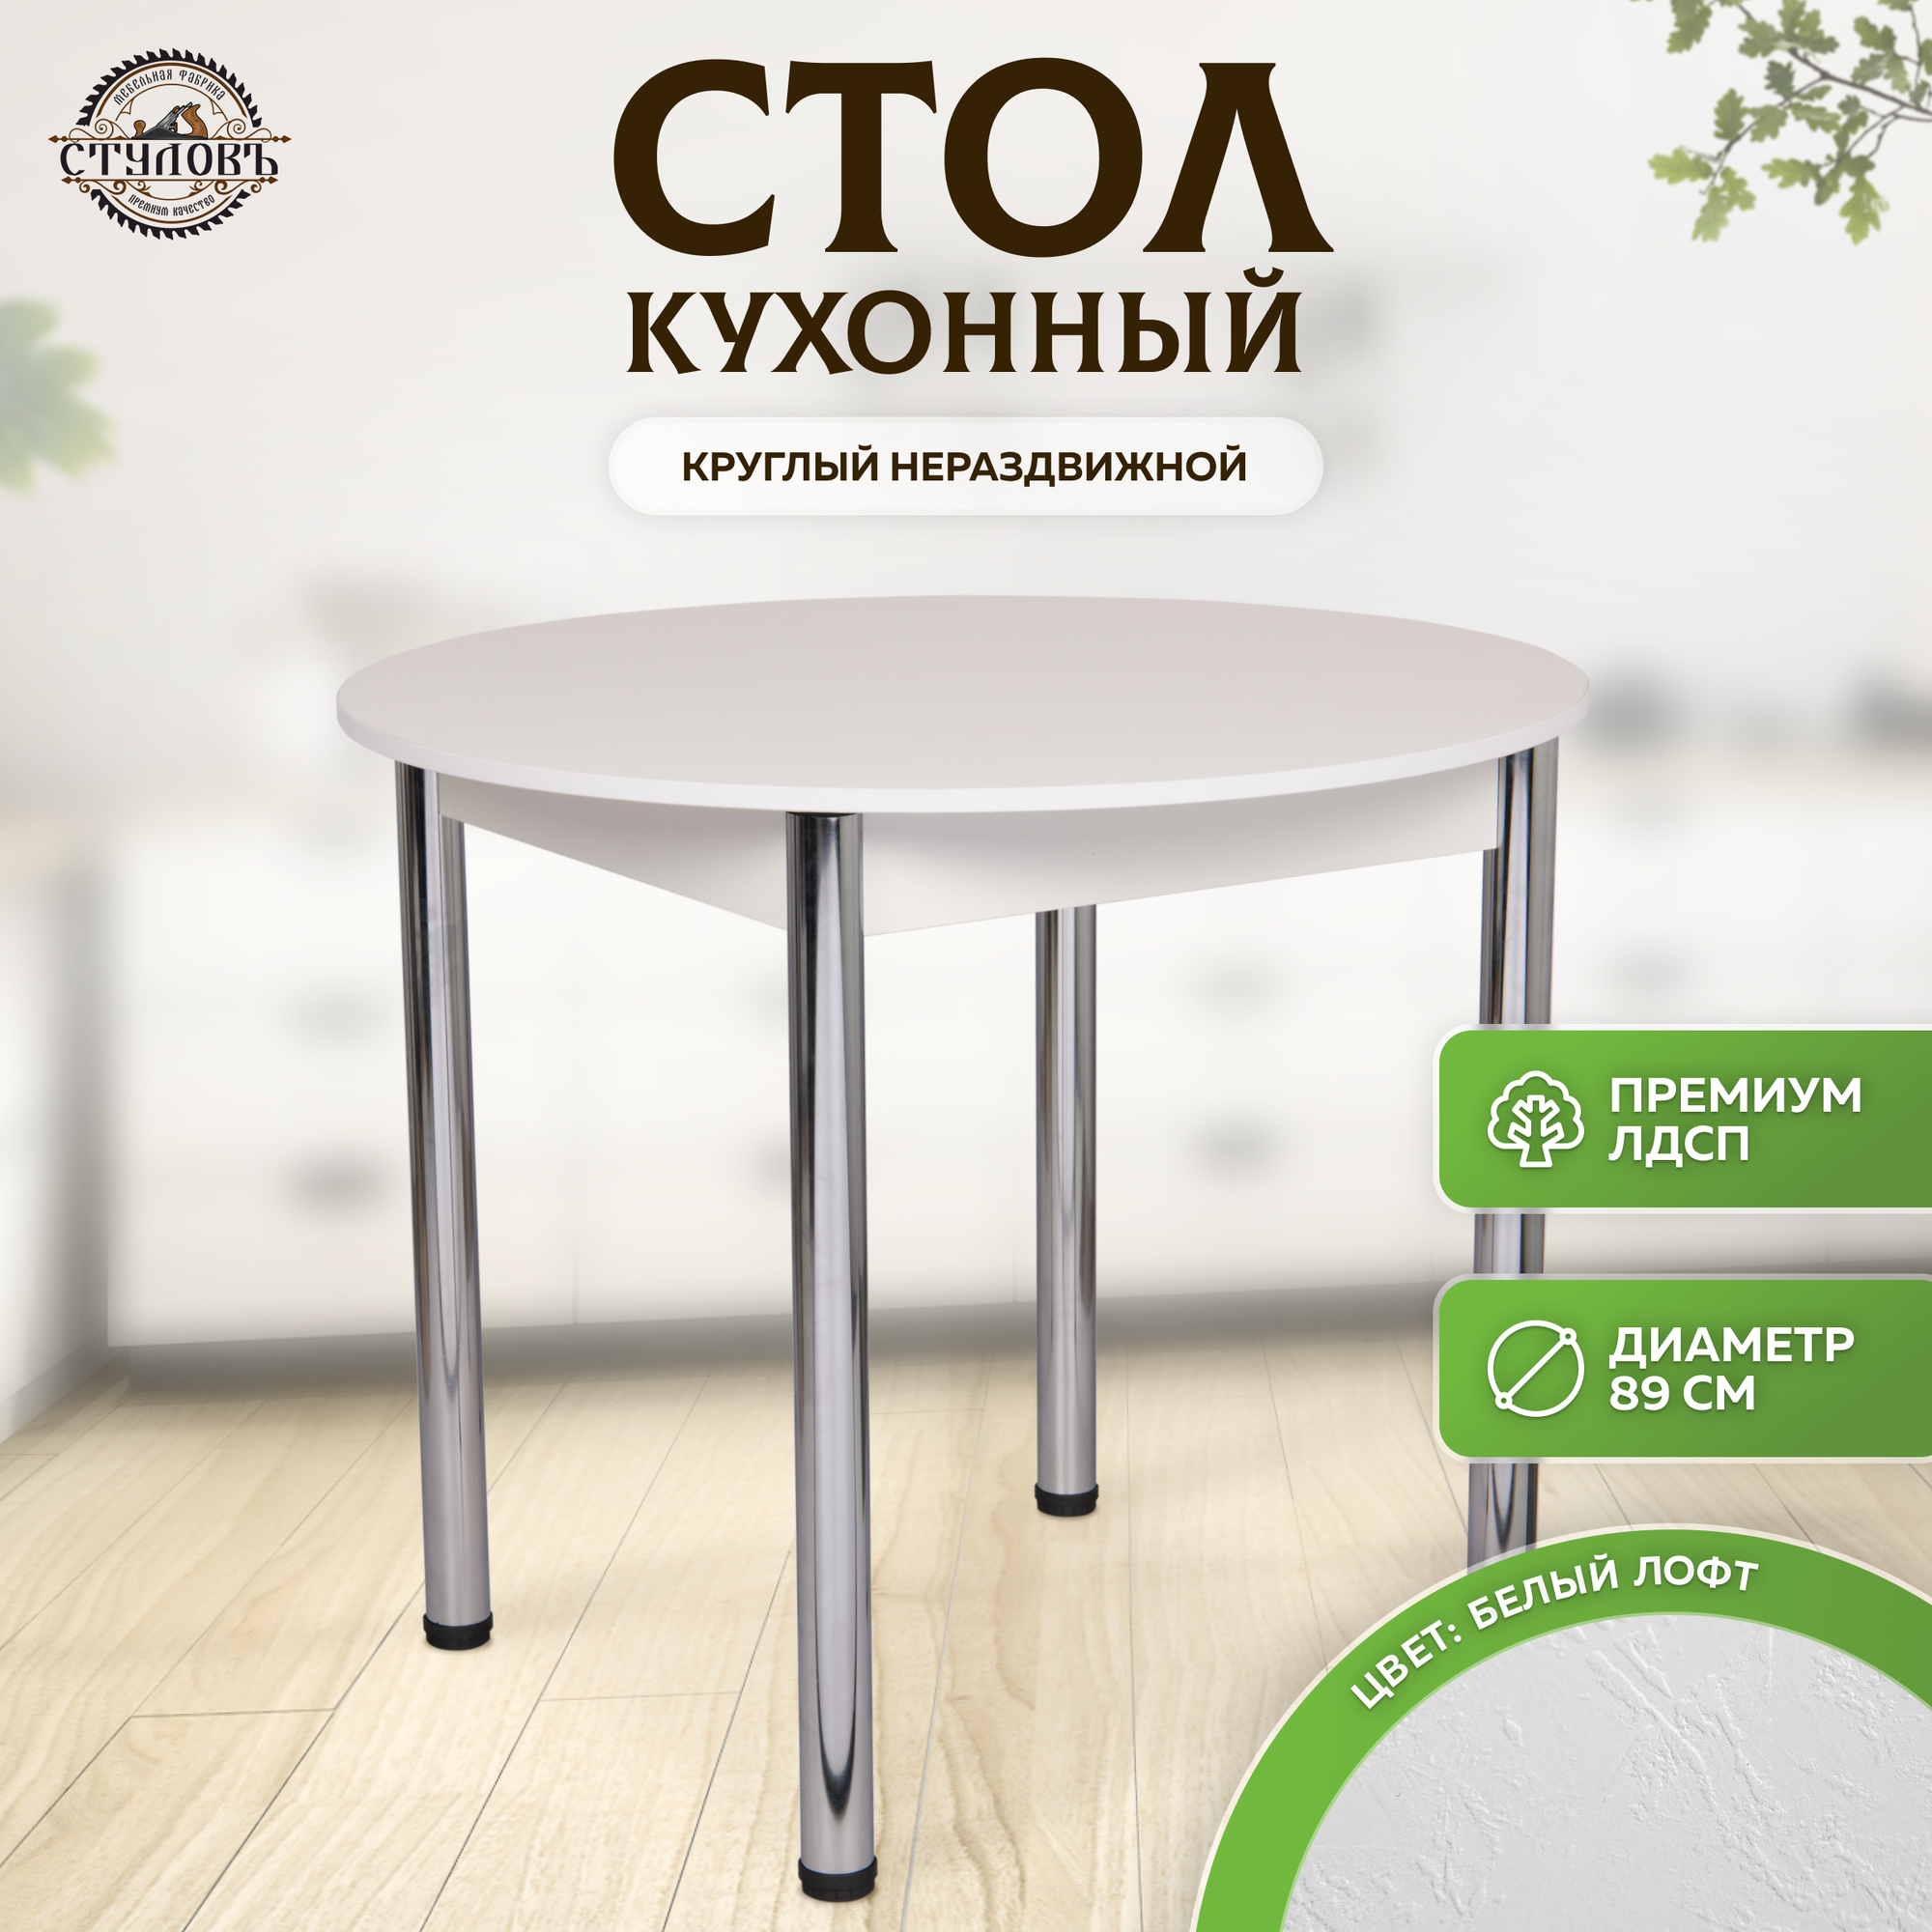 Кухонный столик круглый нераздвижной, 89х89х75 см